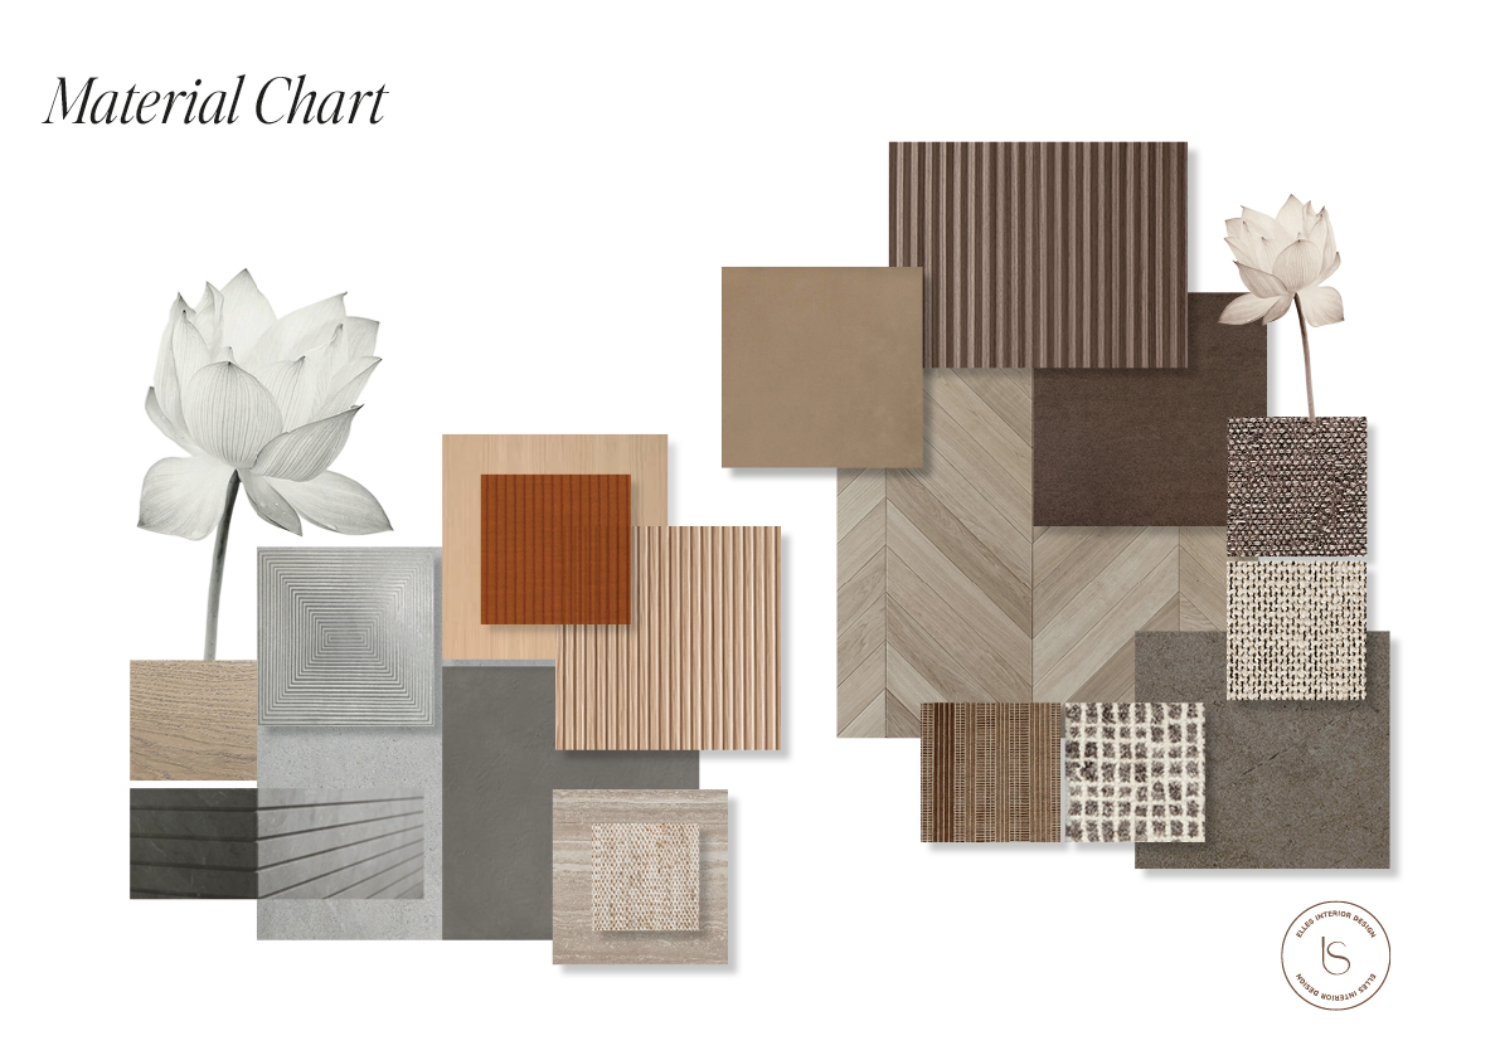 Tableau de matériaux pour soutenir les décisions de couleur et de style, projet réalisé par le studio Elles Interior Design.